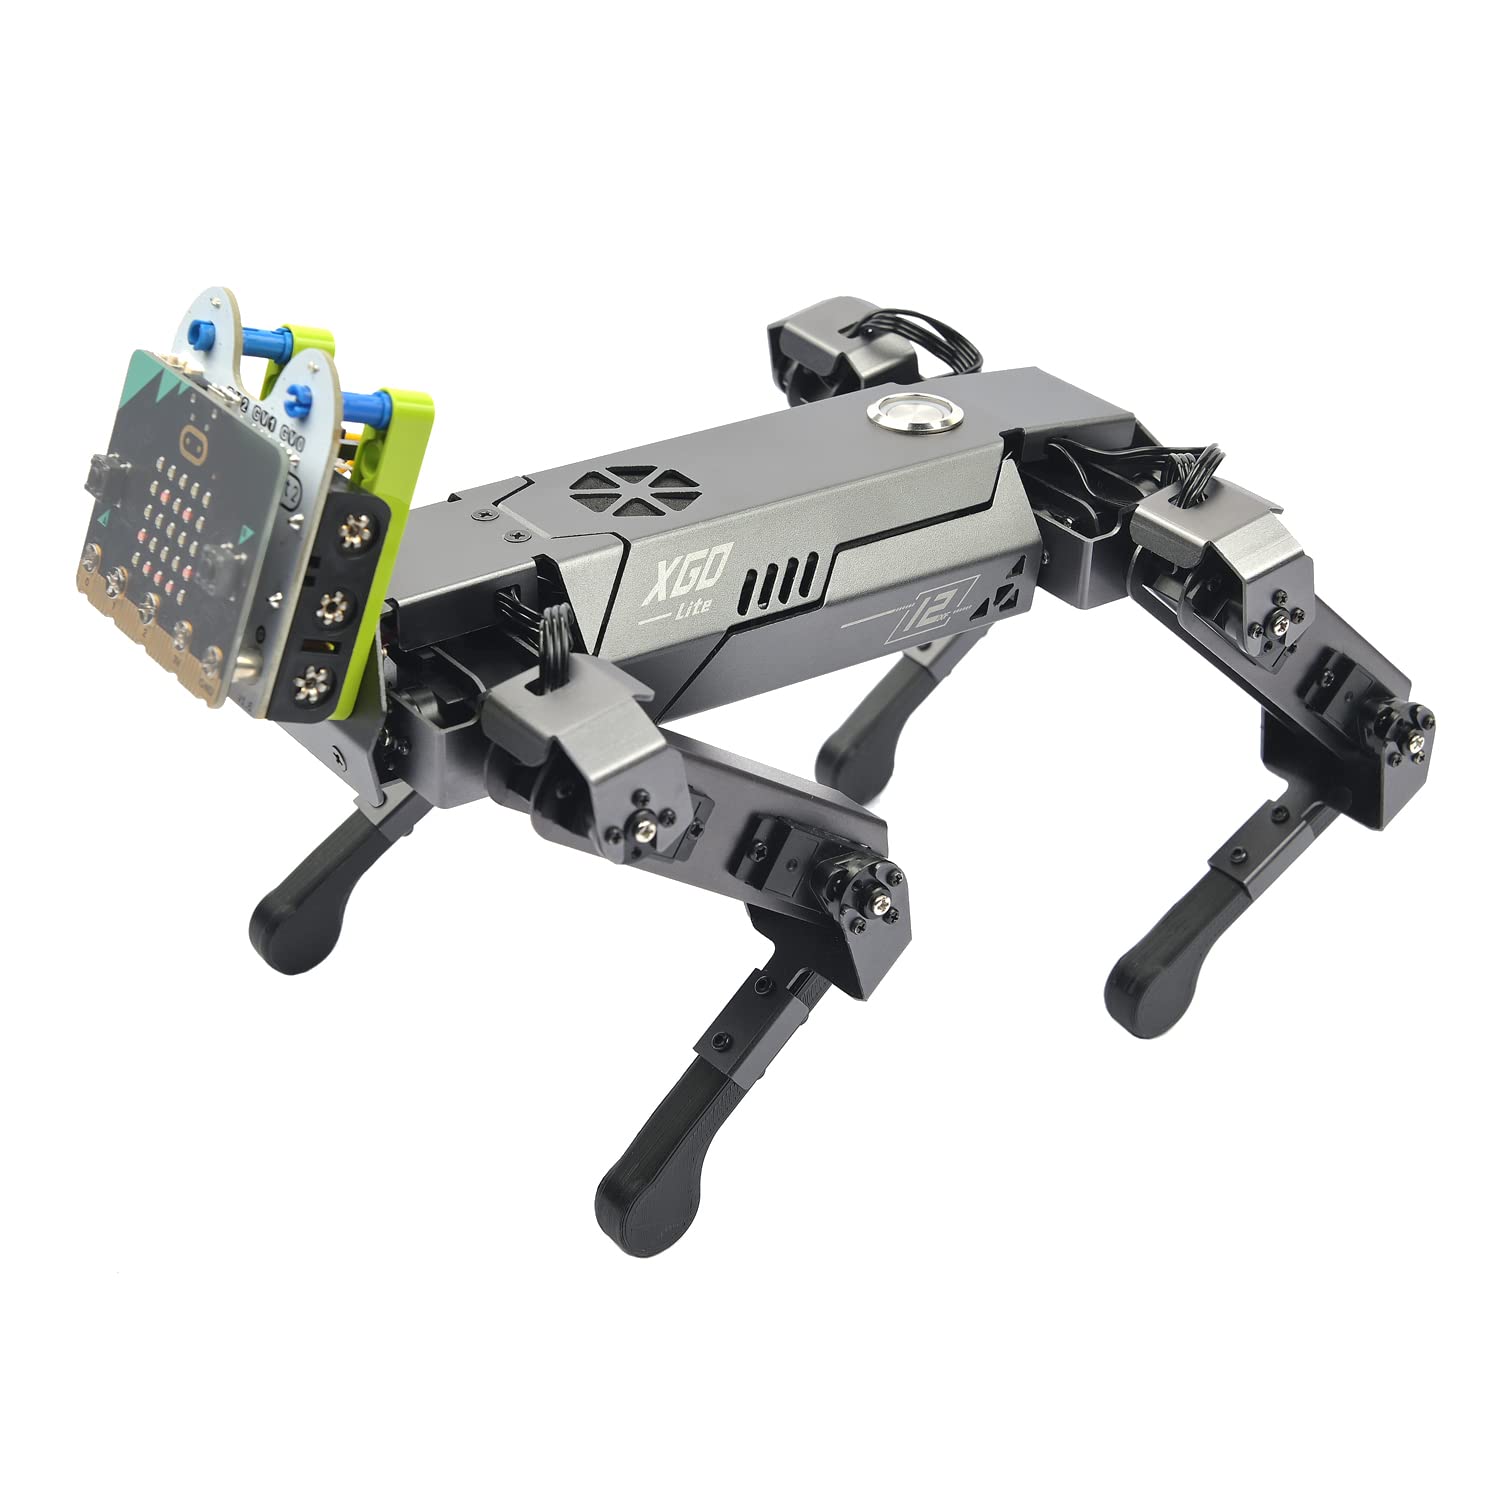 Robotic Dog Xgo Kit